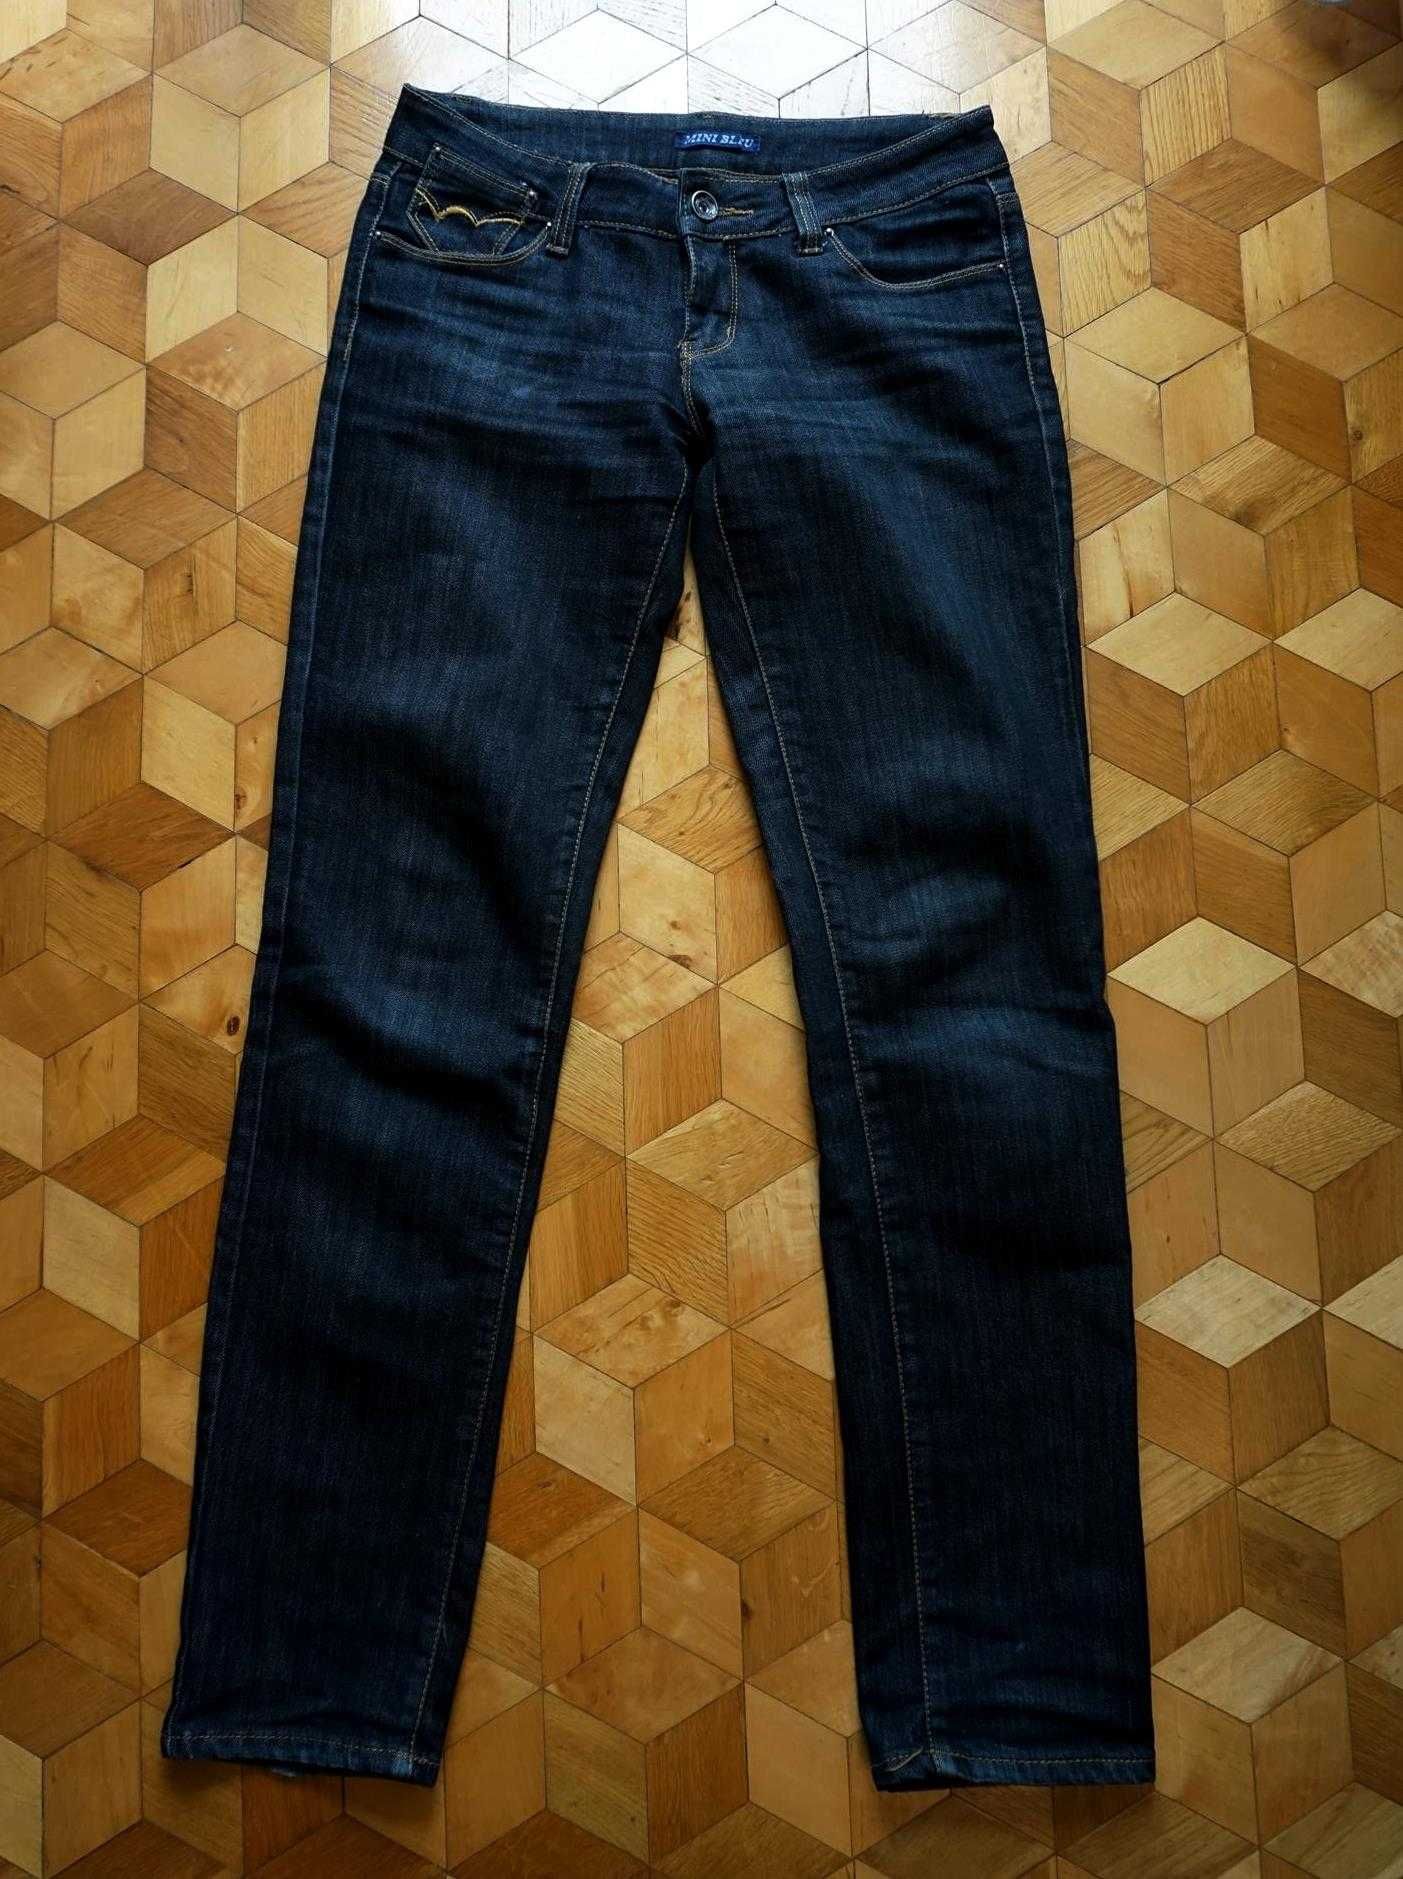 Jeansy dżinsy S 36 klasyczne ciemne czarne grafitowe wąskie rurki